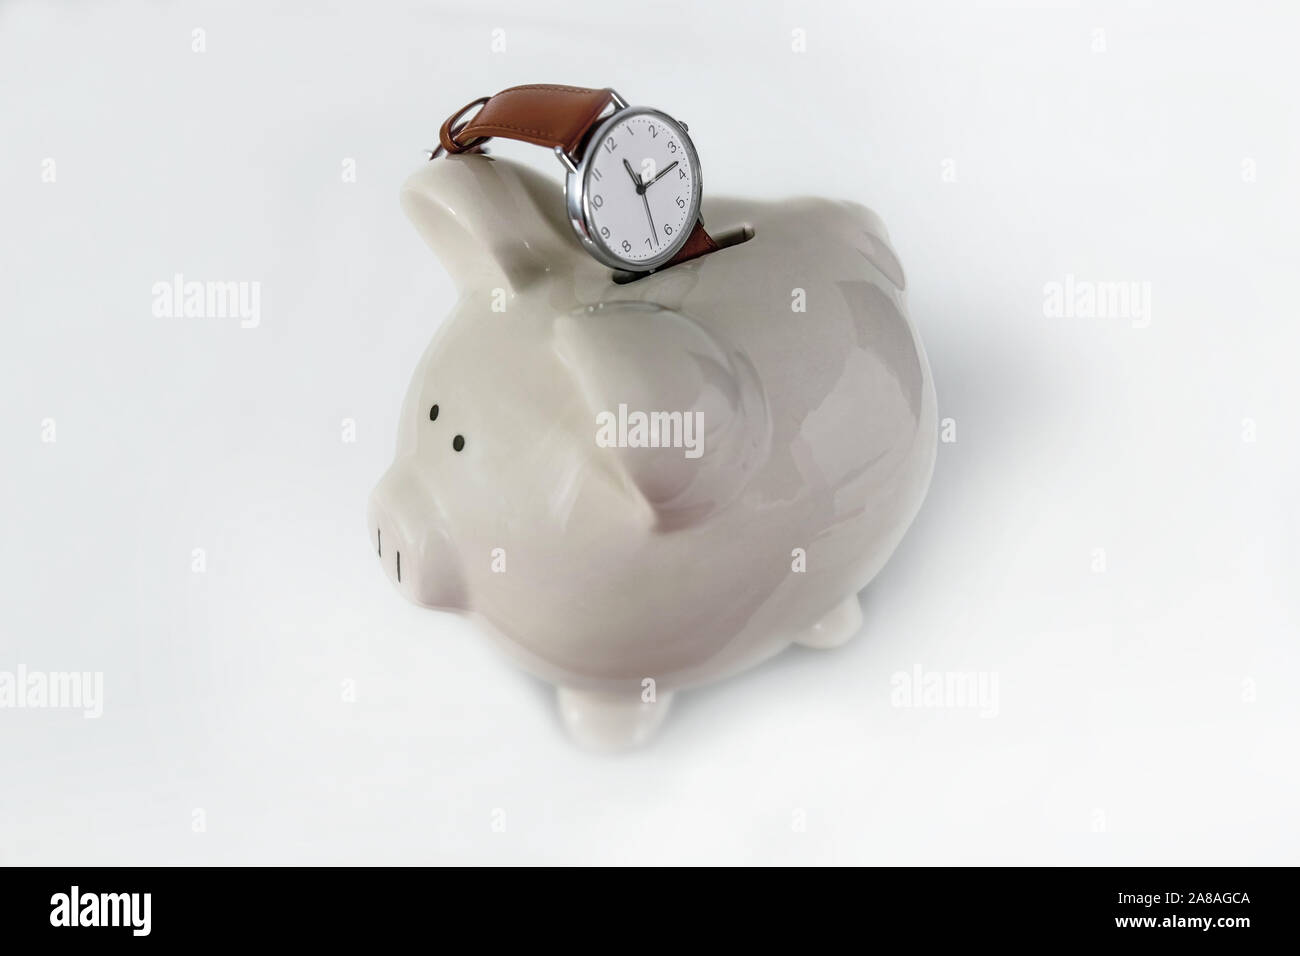 L'orologio rappresenta il tempo che si vuole risparmiare. Il tempo è denaro. Copia-spazio, isolato, chiave alta. Foto Stock